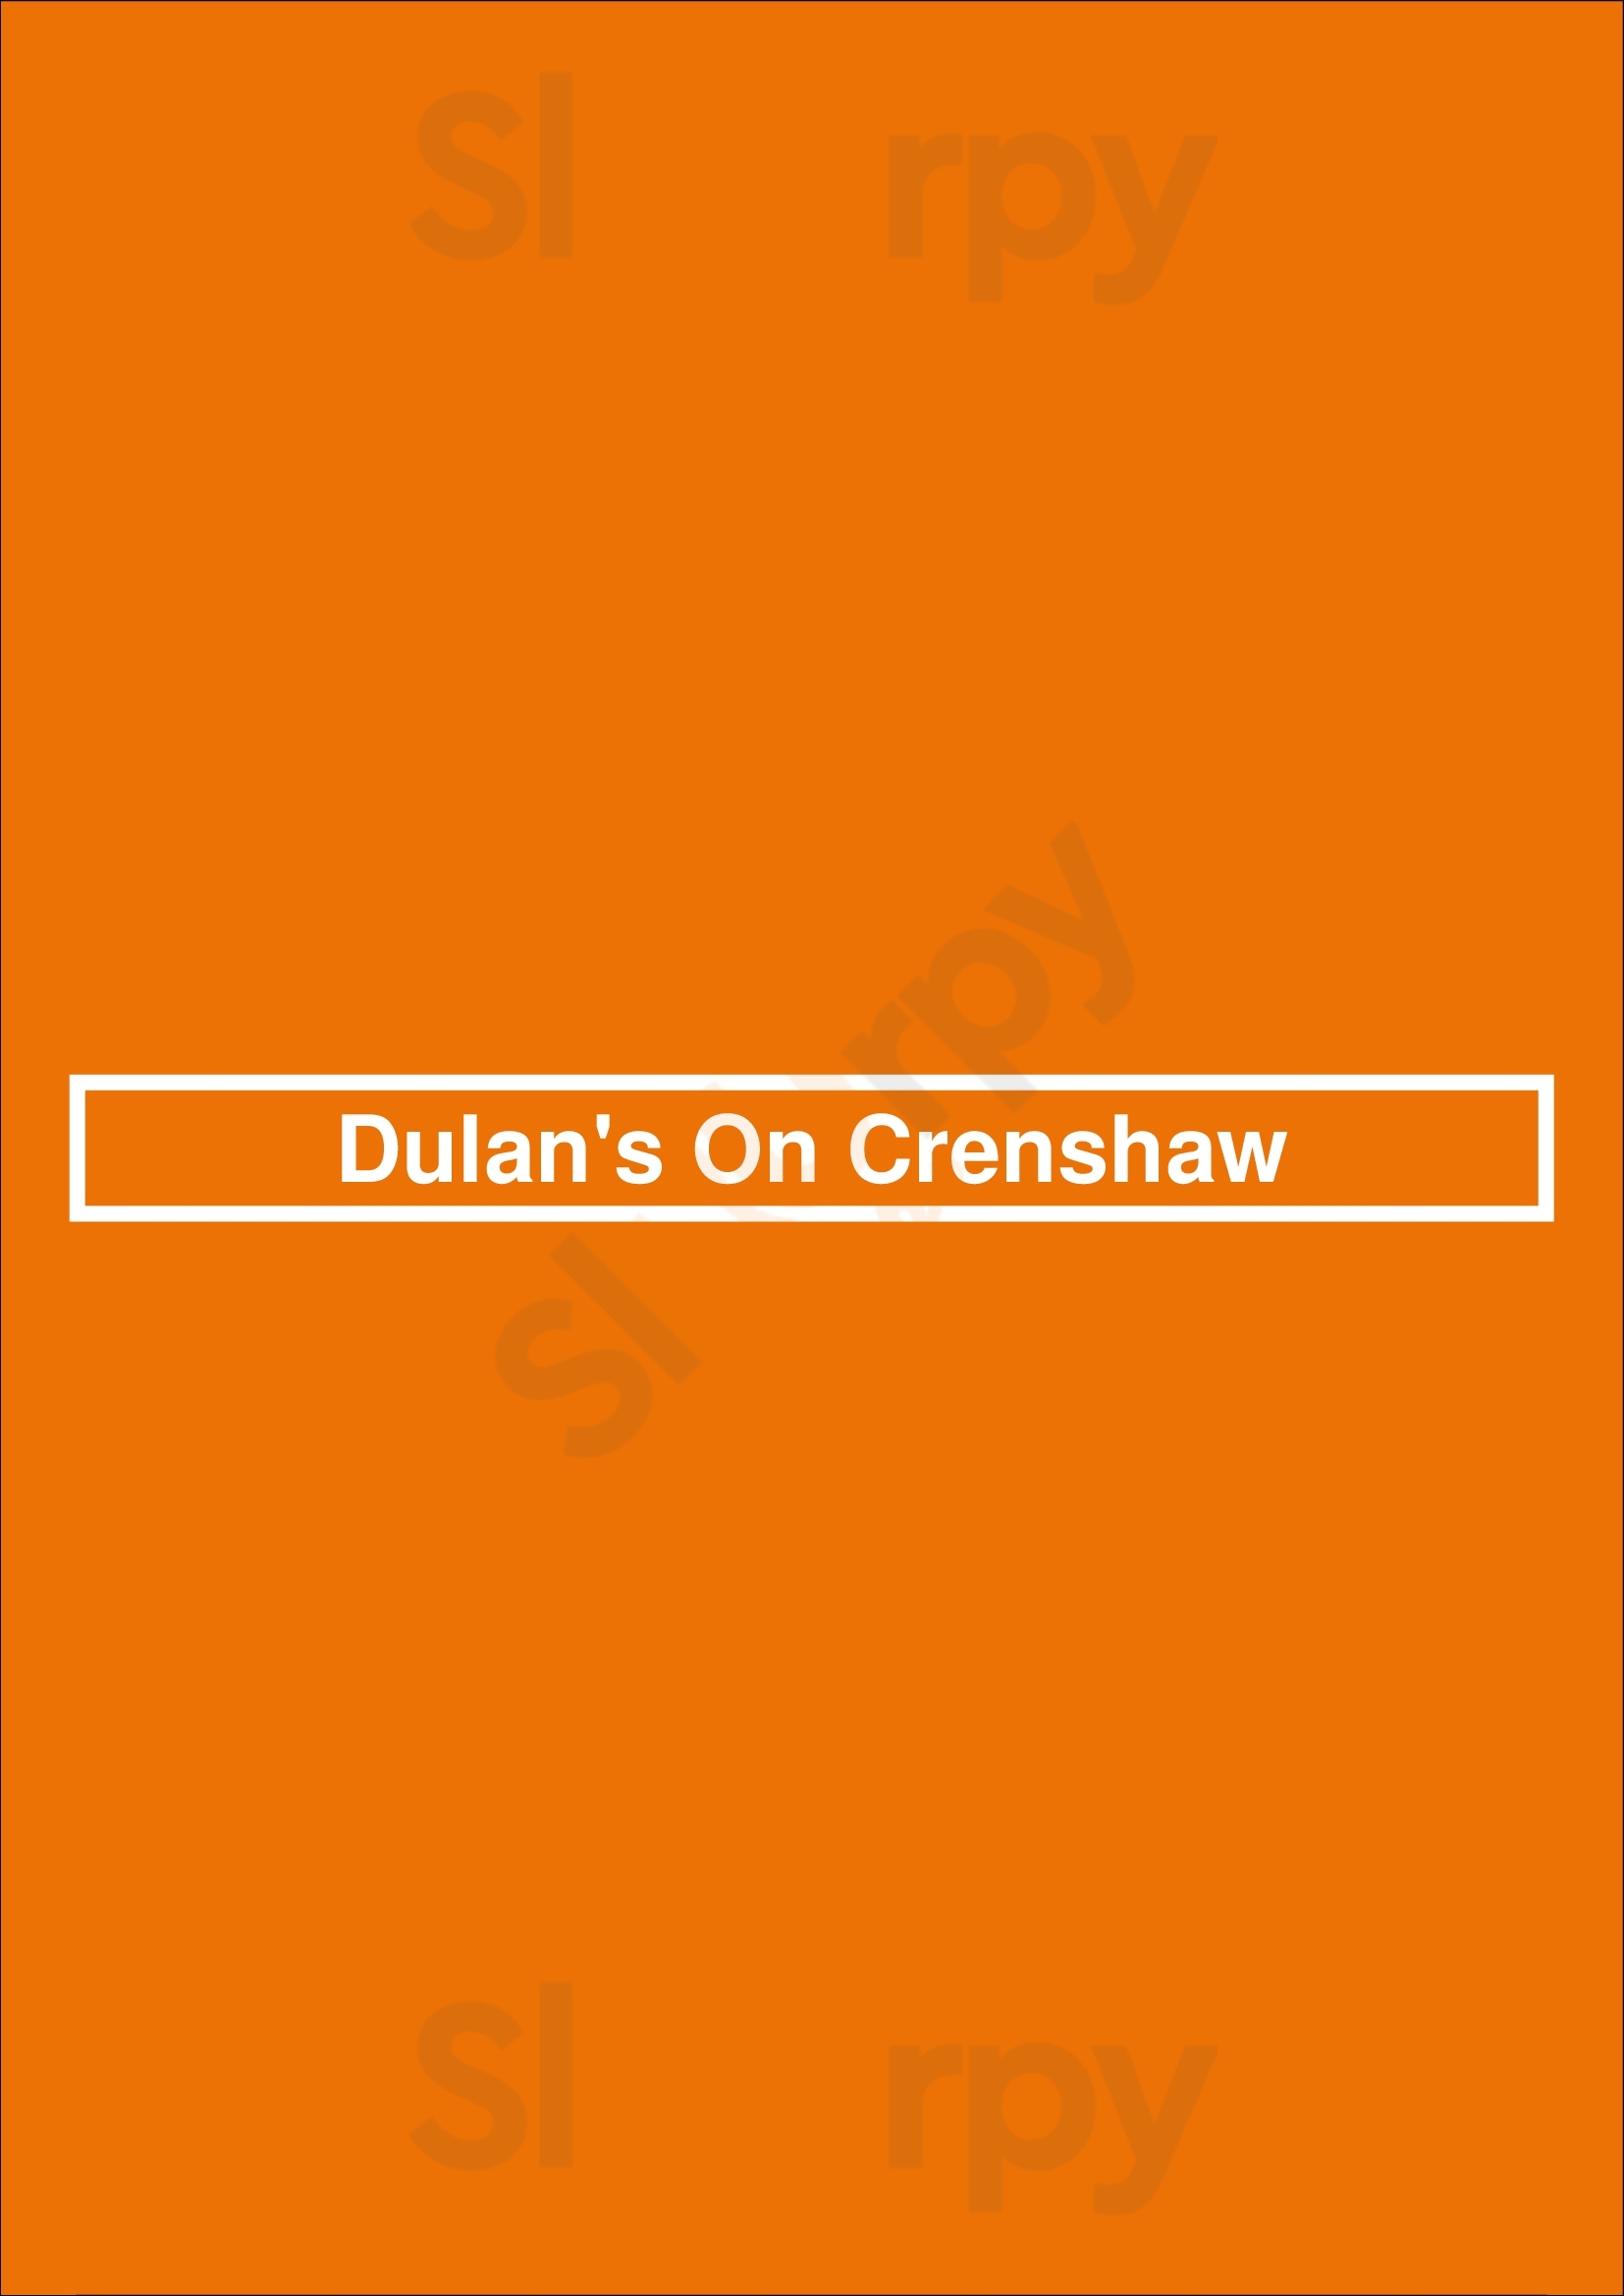 Dulan's On Crenshaw Los Angeles Menu - 1